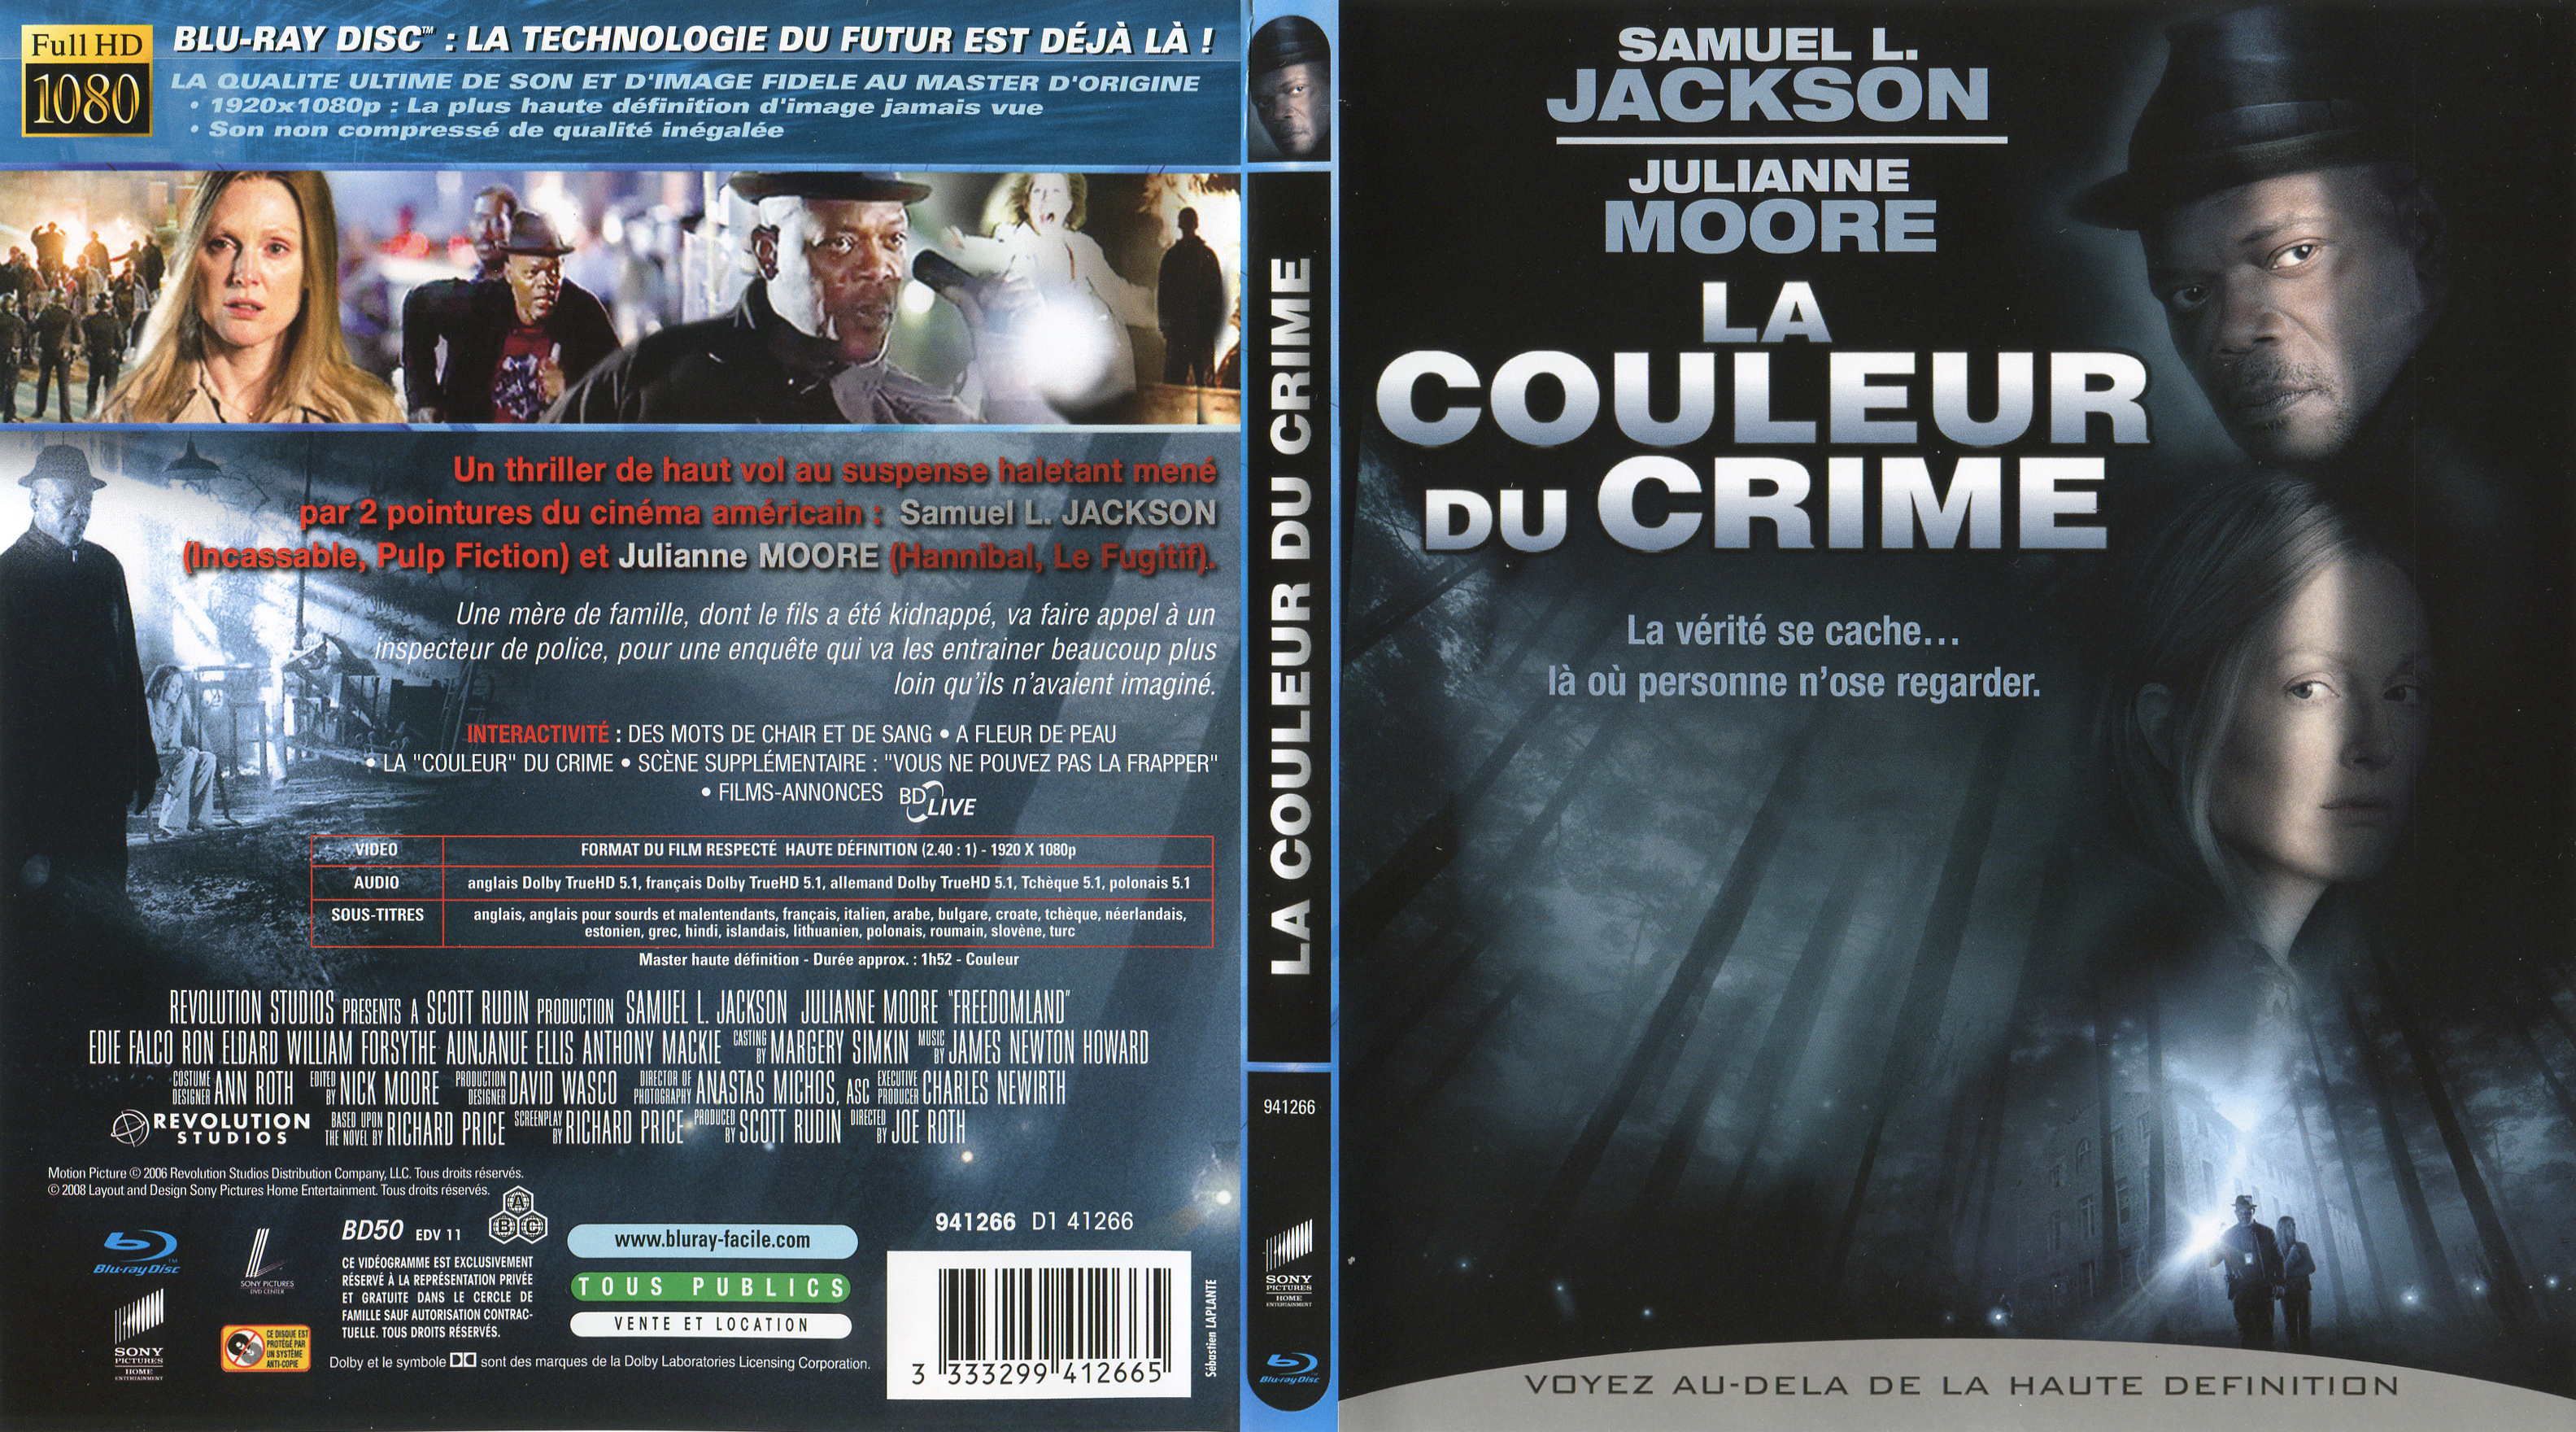 Jaquette DVD La couleur du crime (BLU-RAY)